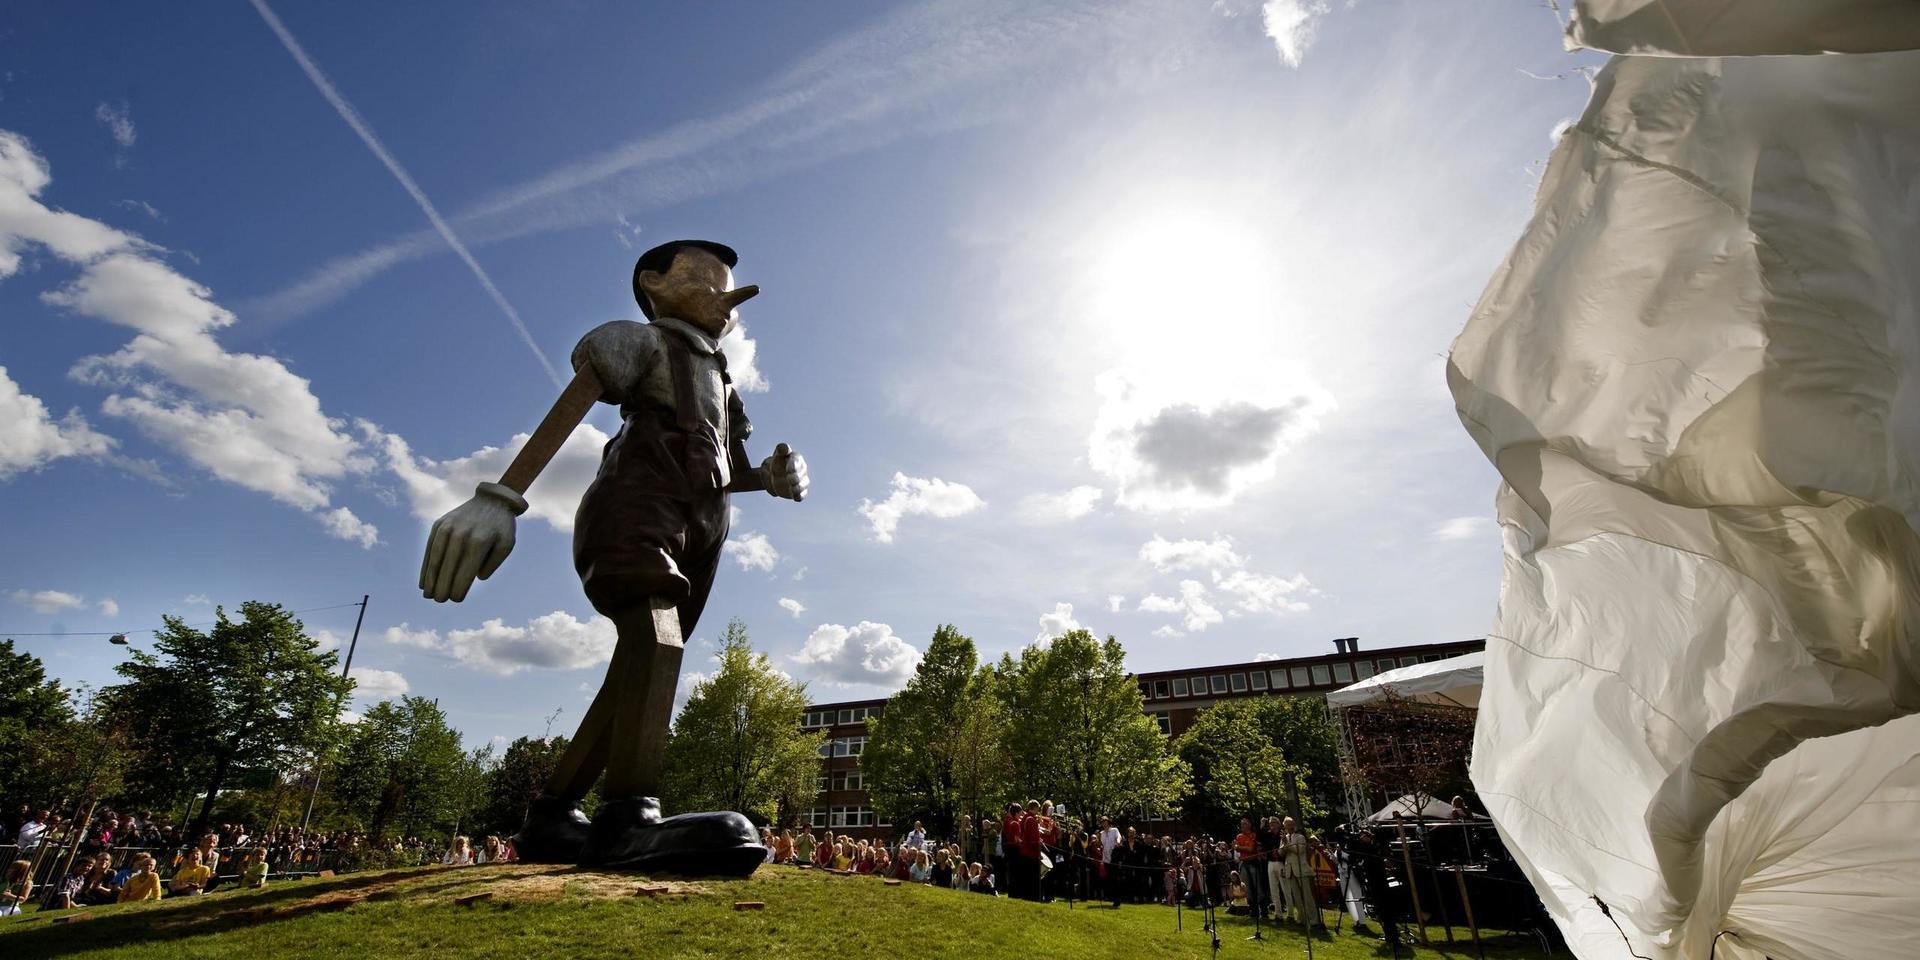 Pinocchiostatyn av konstnären Jim Dine är ett konstverk som väckte debatt när det uppfördes i Borås 2008.